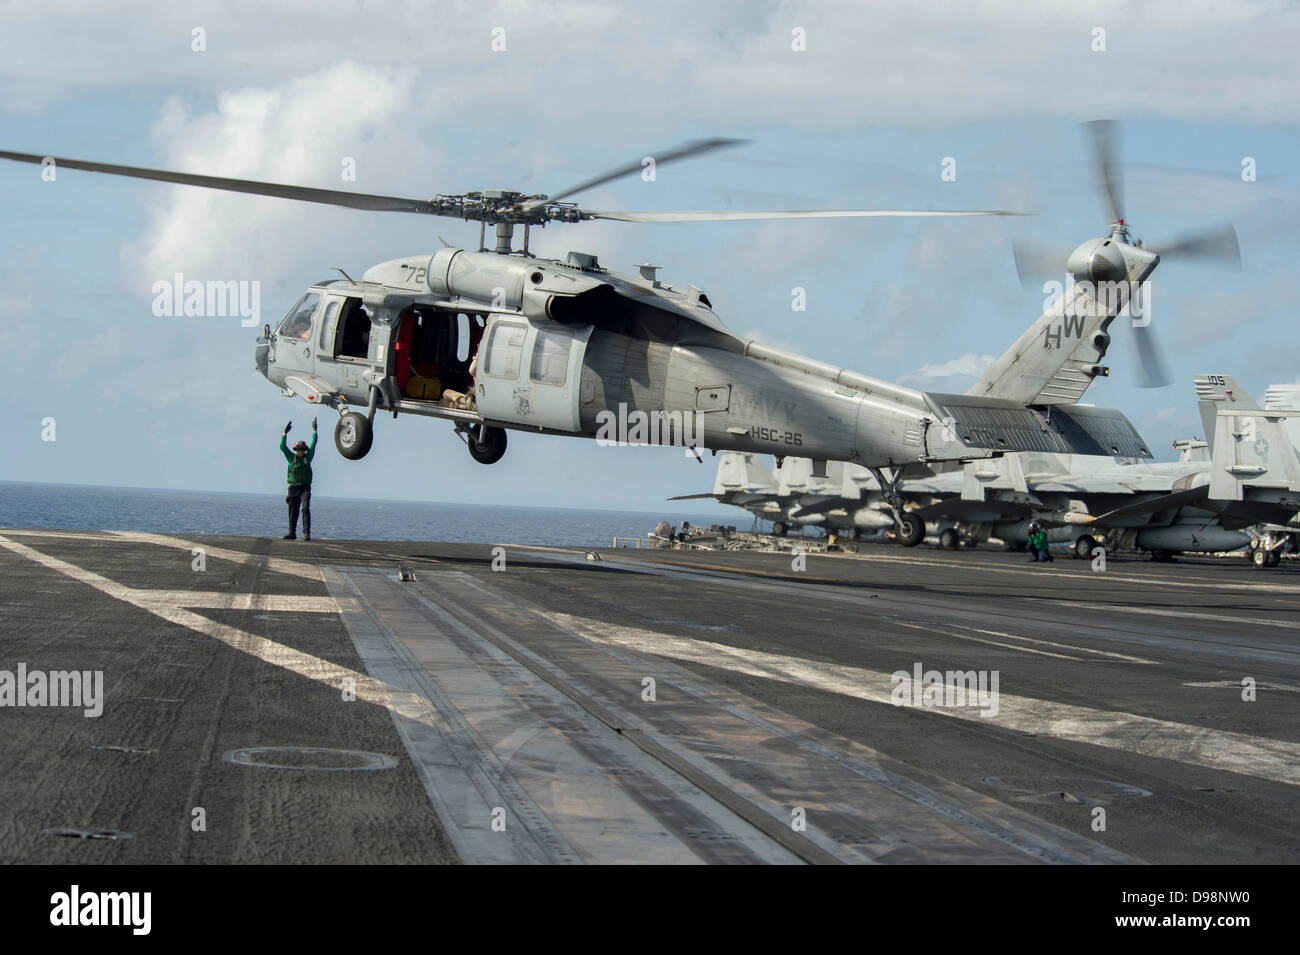 NÖRDLICHEN arabischen Meer (5. Juni 2013) A Sailor signalisiert einen MH-60 s Sea Hawk-Hubschrauber, die Ladegeräte der Hubschrauber Meer bekämpfen Squadron (HSC) 26, heben Sie das Flugdeck des Flugzeugträgers USS Dwight D. Eisenhower (CVN-69) zugewiesen. Dwight D. Eisenhower Stockfoto